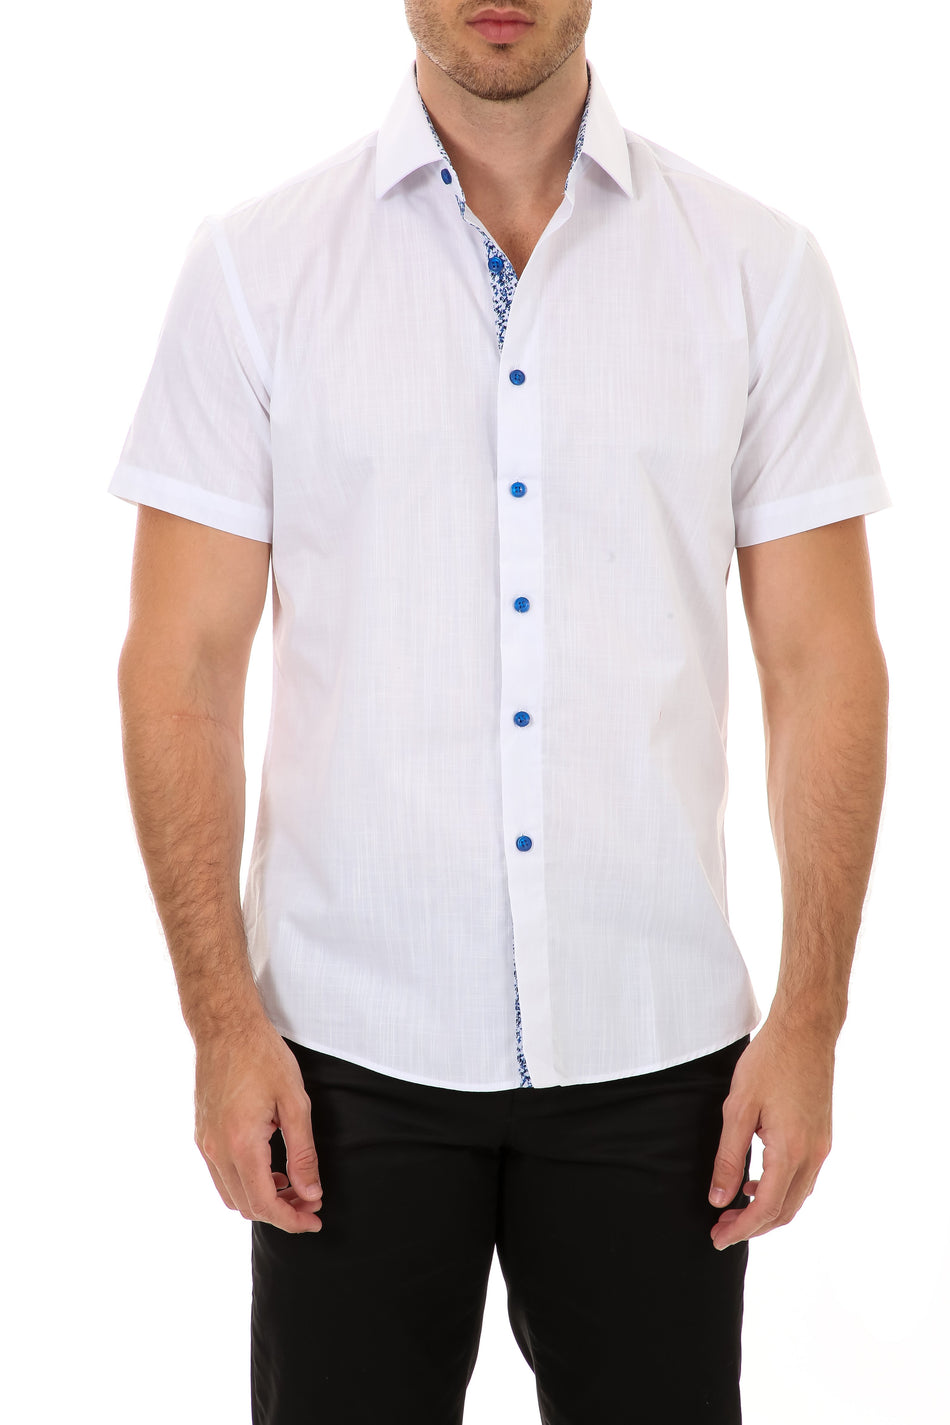 BESPOKE - Mens White Button Up Short Sleeve Dress Shirt - Modern Fit ...